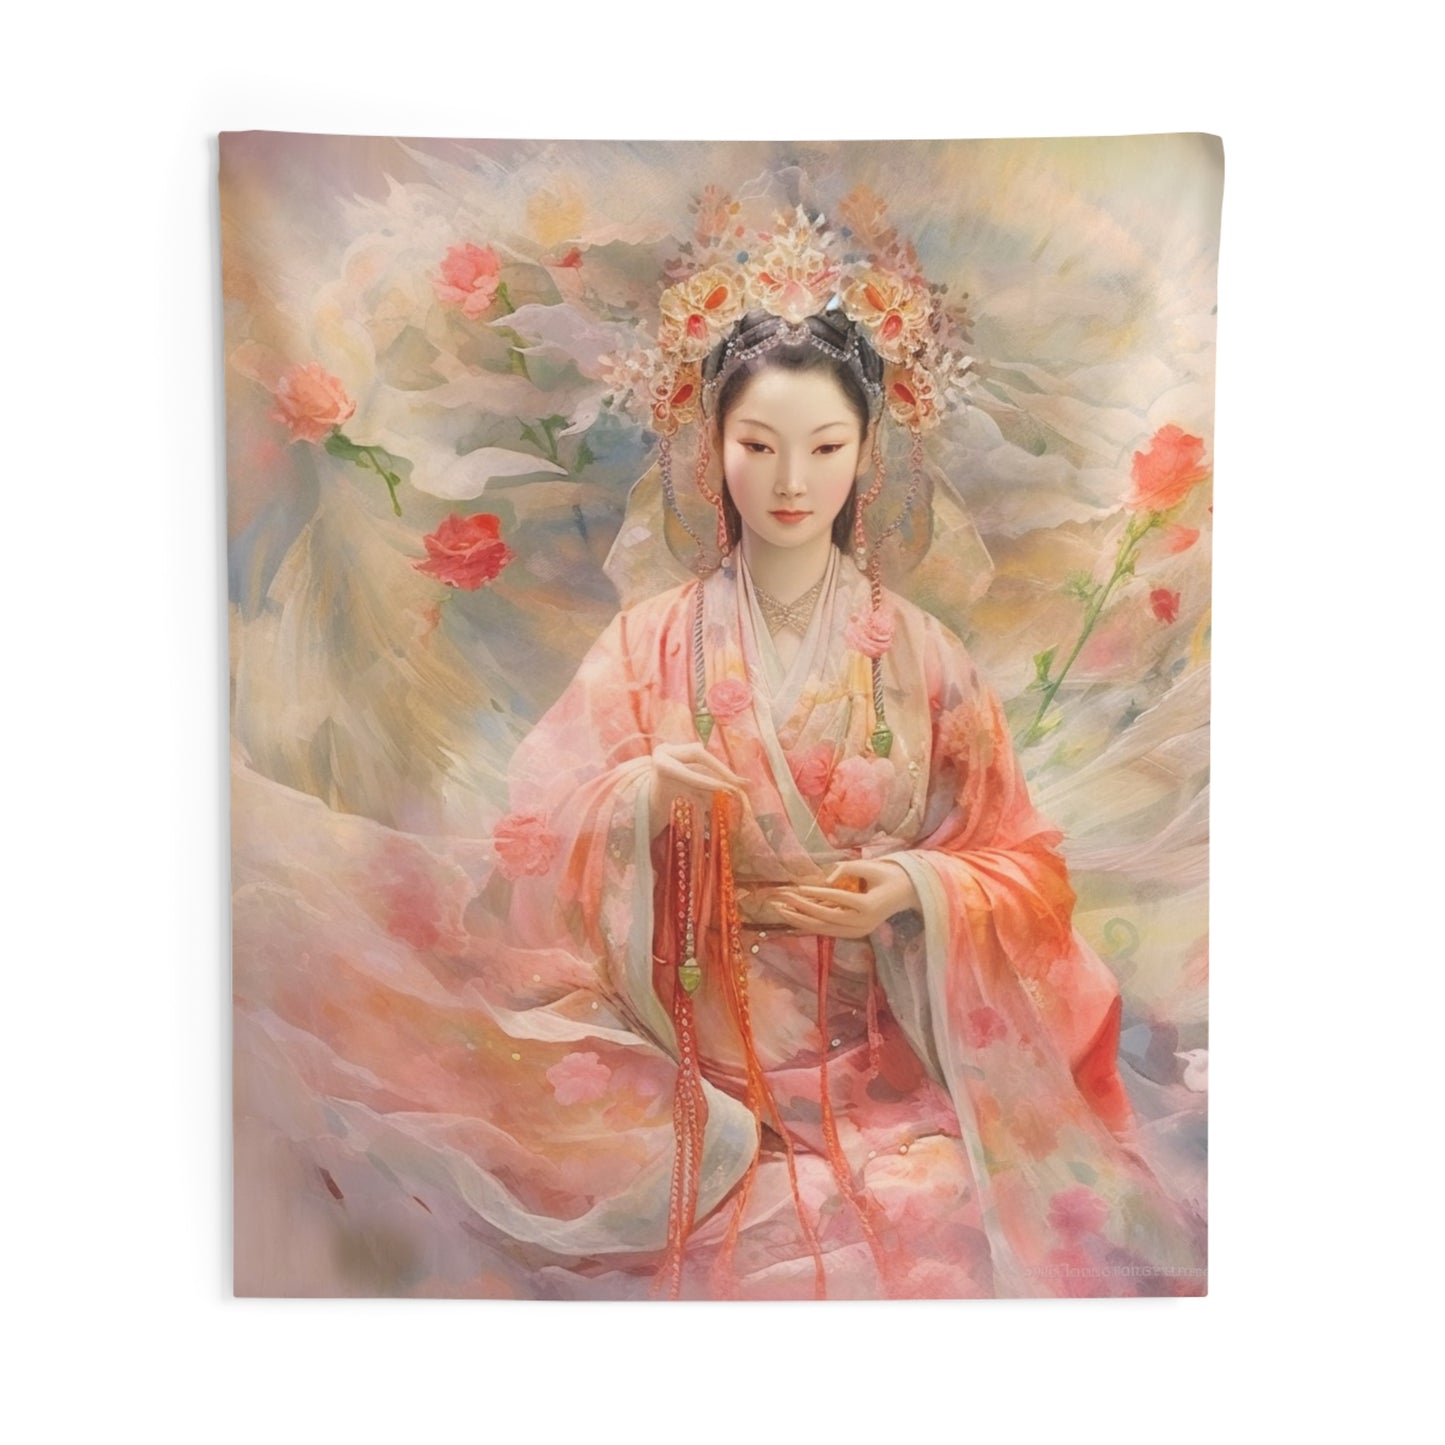 Quan Yin Wall Tapestry - Guan Yin, Kwan Yin, Goddess of Compassion - Spiritual Wall Decor for Buddhism Home Decor 88" × 104"  